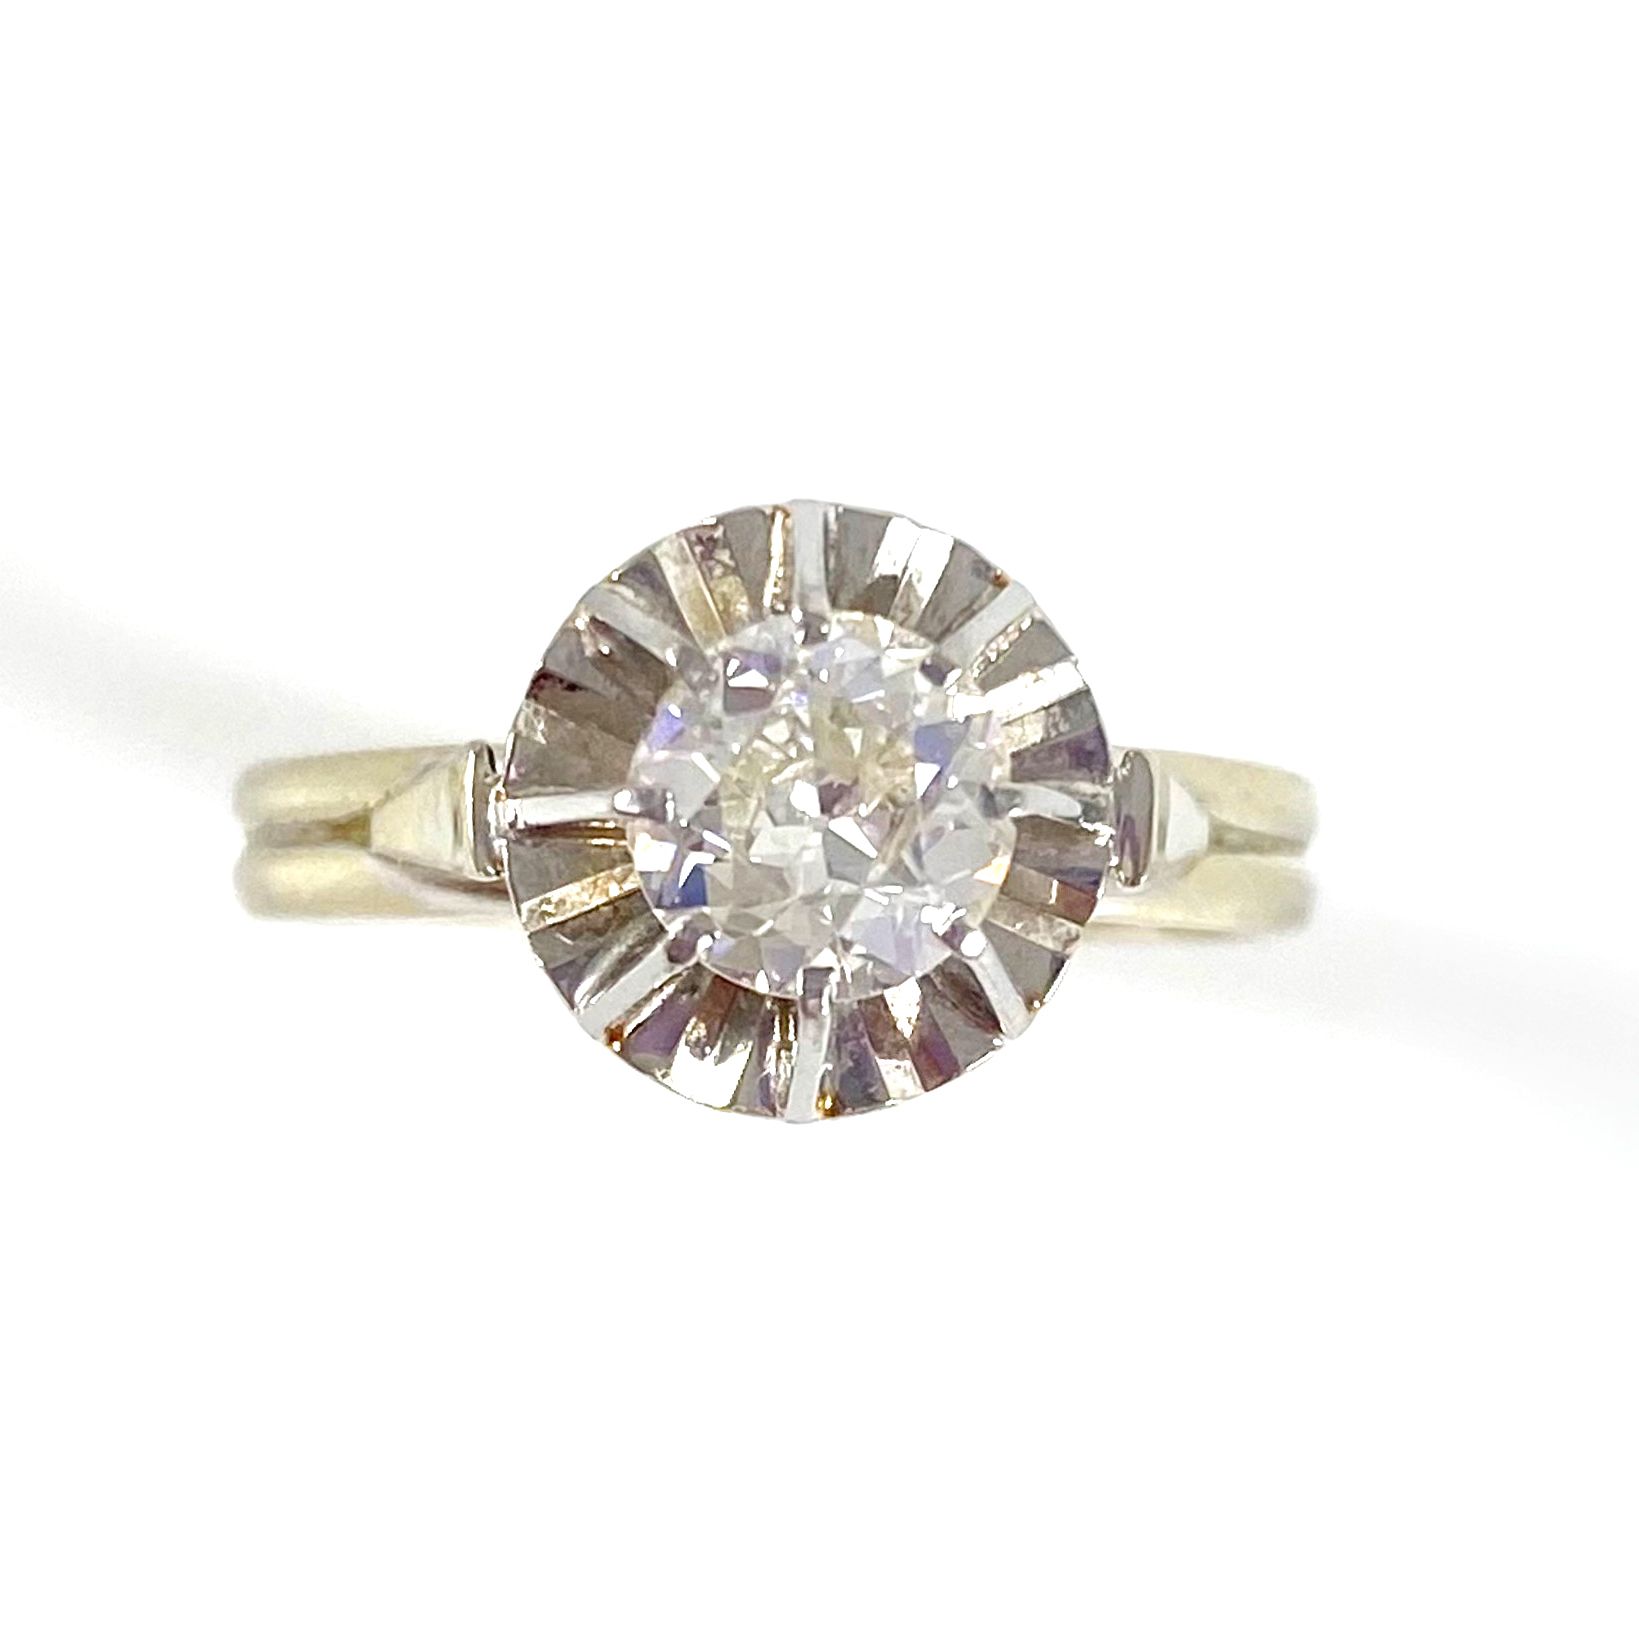 Null 镶嵌有0.85克拉老式切割钻石的单面戒指。镶嵌在铂金和18K白金中。法国的工作。 TDD : 58.毛重：4.14克。 一枚钻石、铂金和白金戒指。